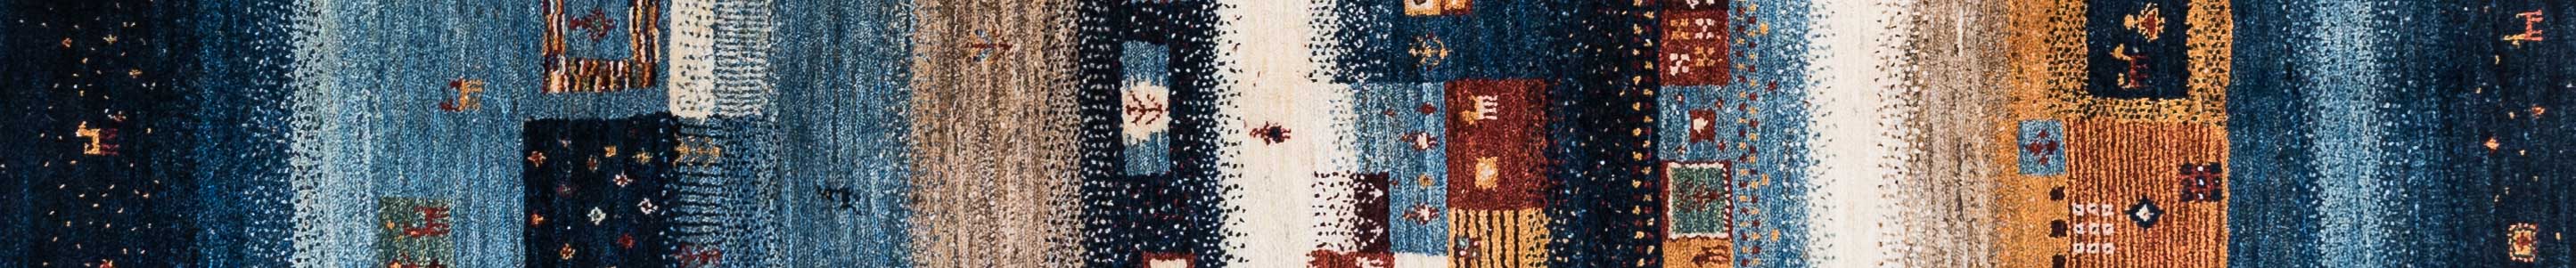 Gabbeh Persian Carpet Rug N1Carpet Canada Montreal Tapis Persan 3550